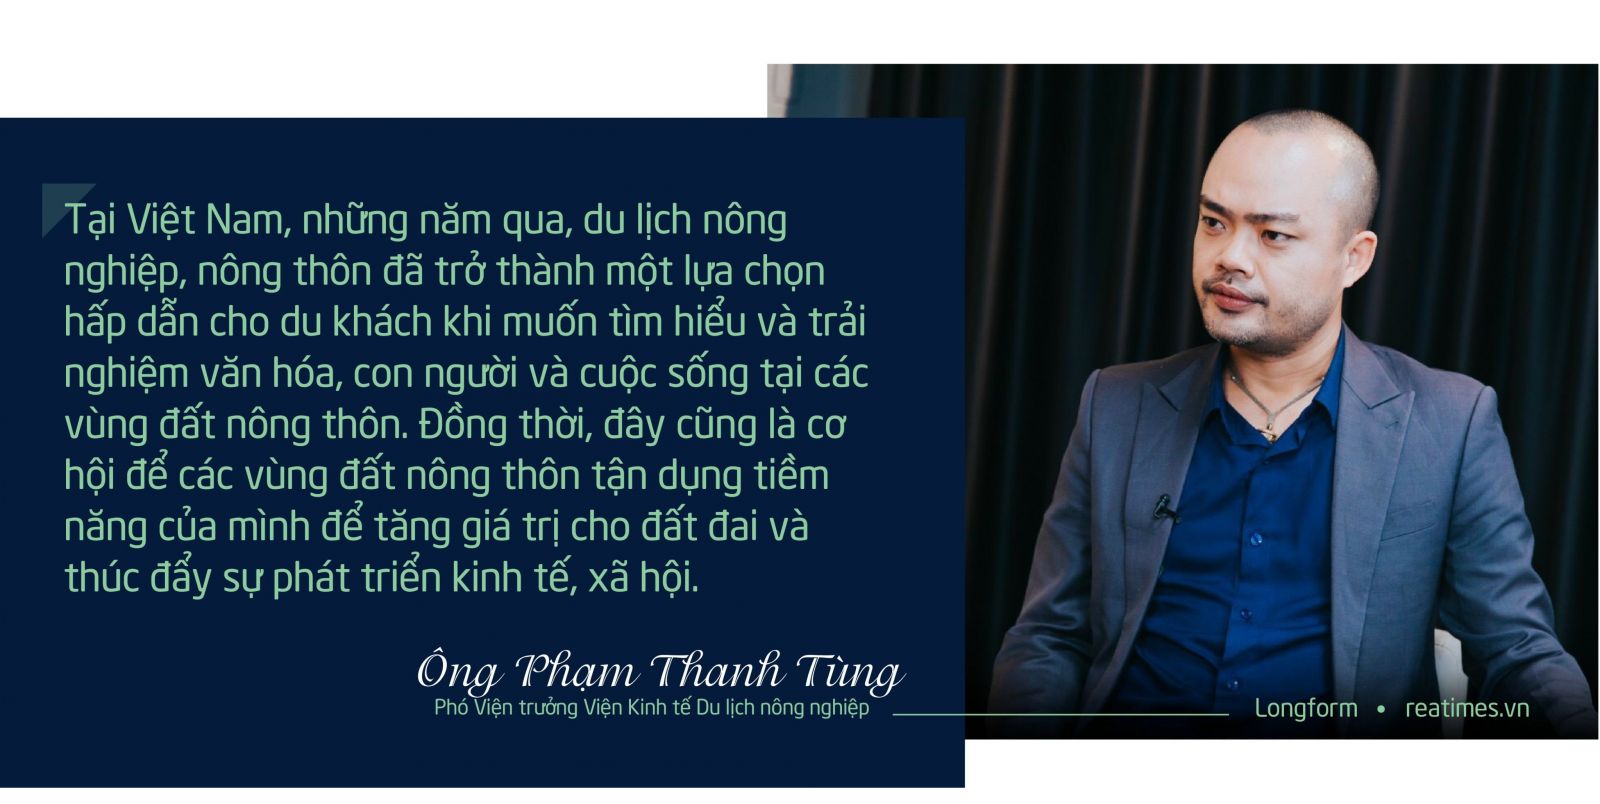 Du lịch nông nghiệp TS Phạm Thanh Tùng